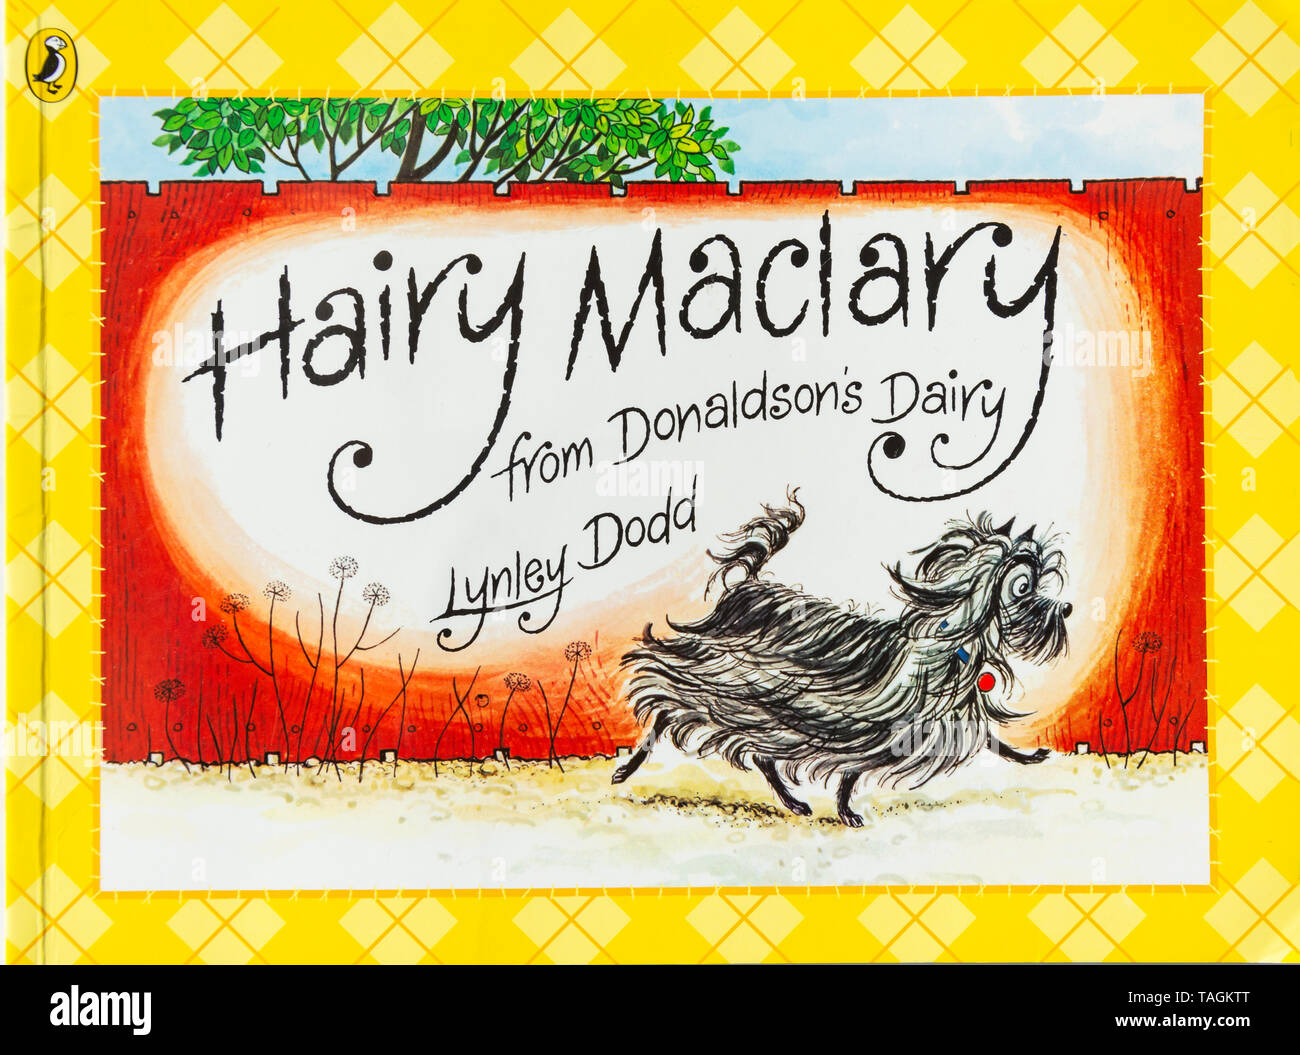 Nuova Zelanda libro per bambini Hairy Maclary da Donaldson del caseificio da Lynley Dodd, Christchurch, regione di Canterbury, Nuova Zelanda Foto Stock